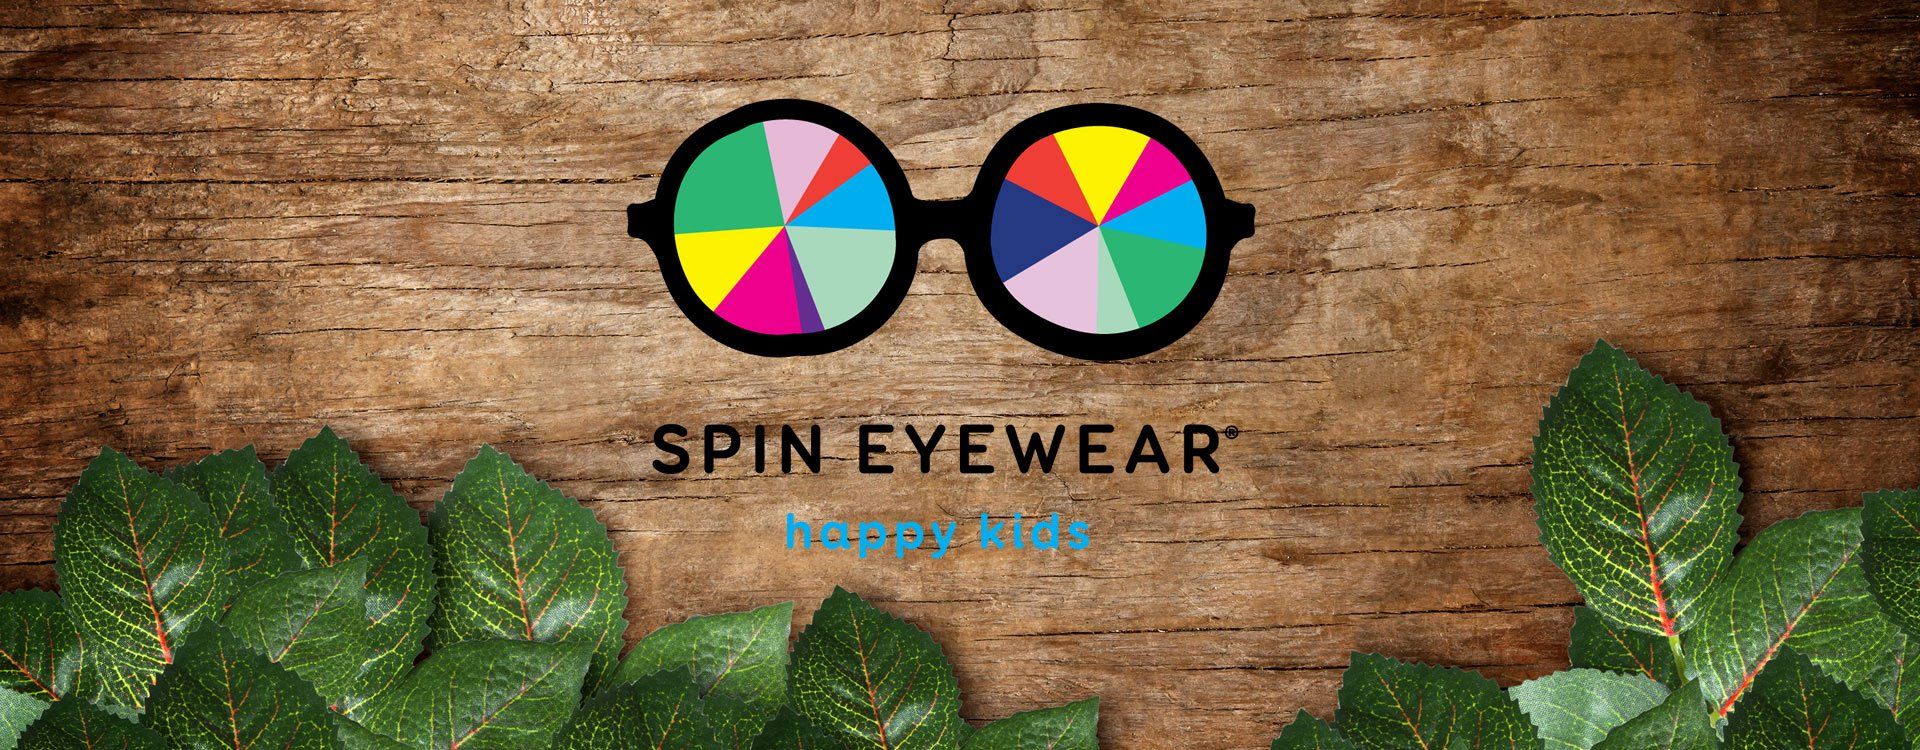 Spin Eyewear